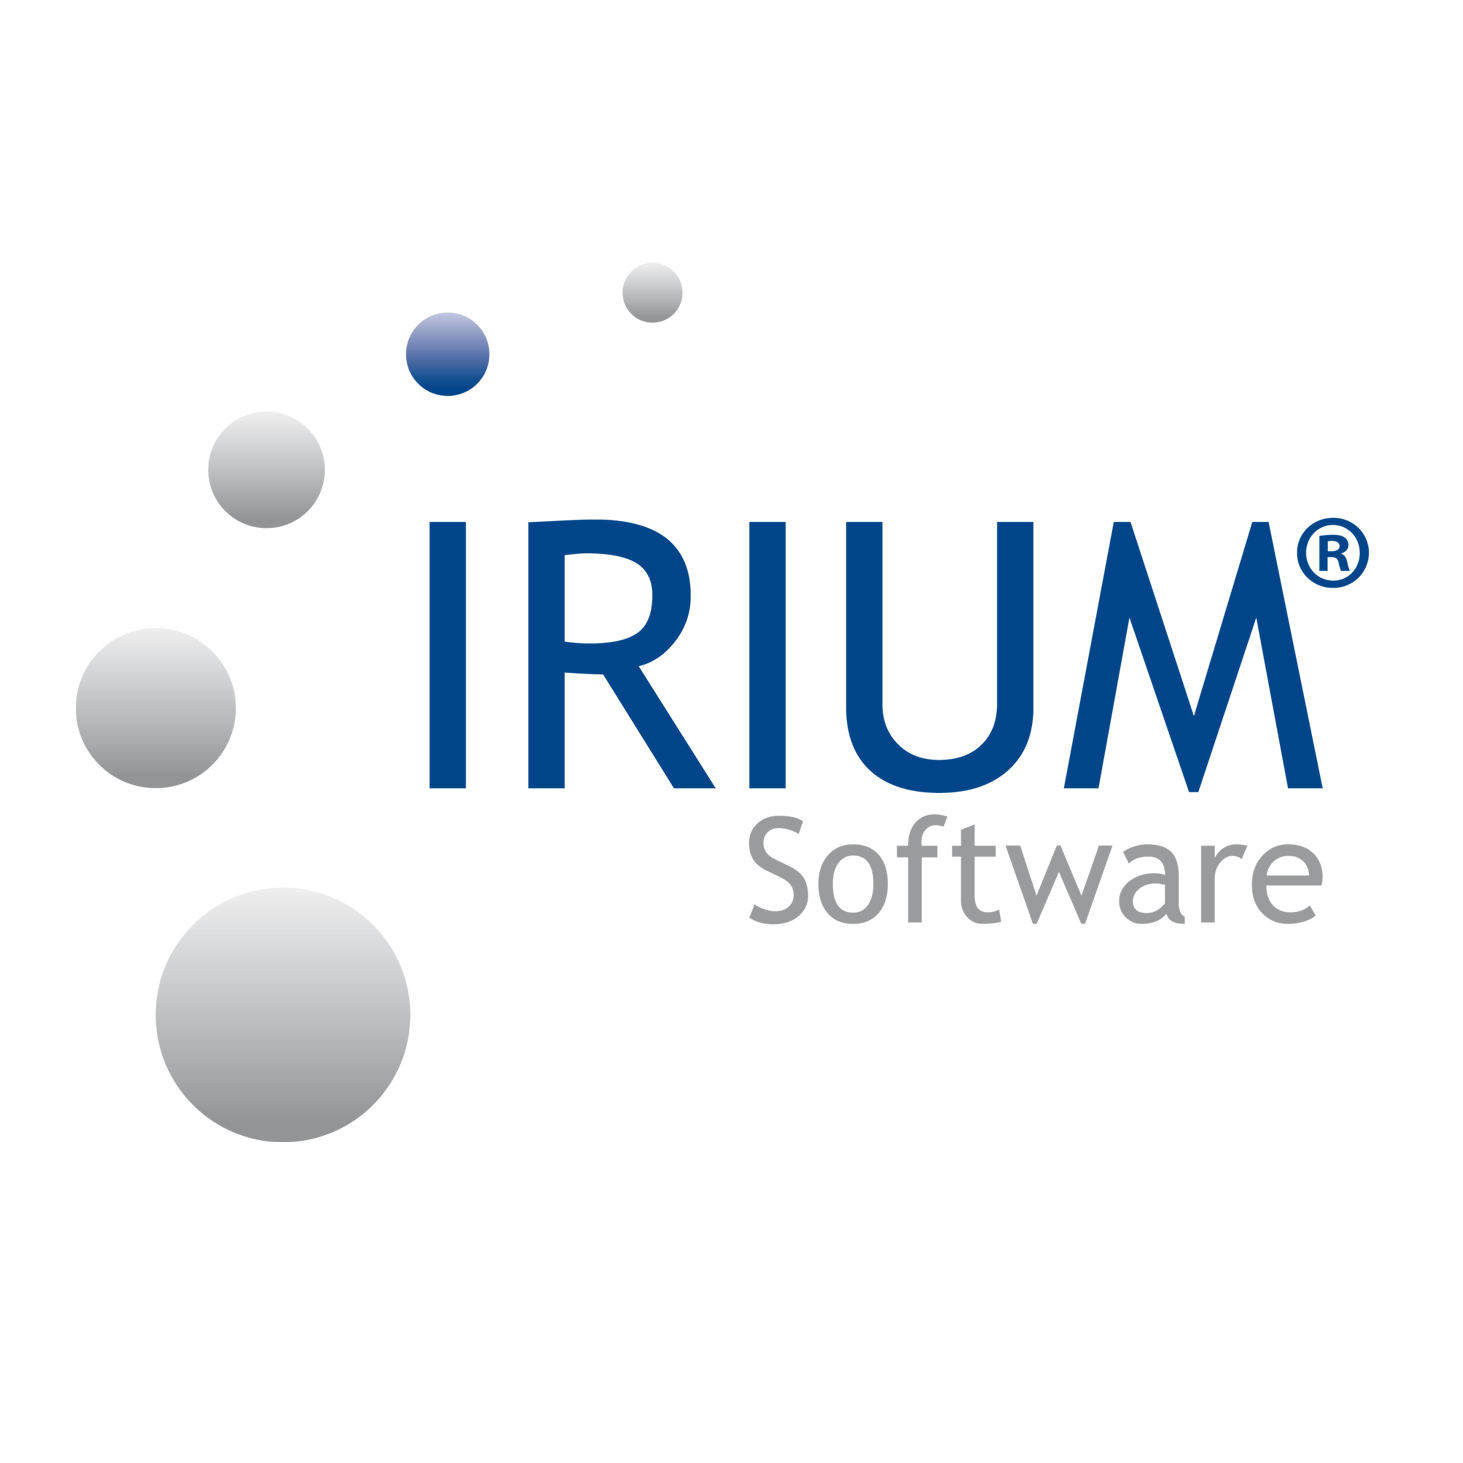 IRIUM Software